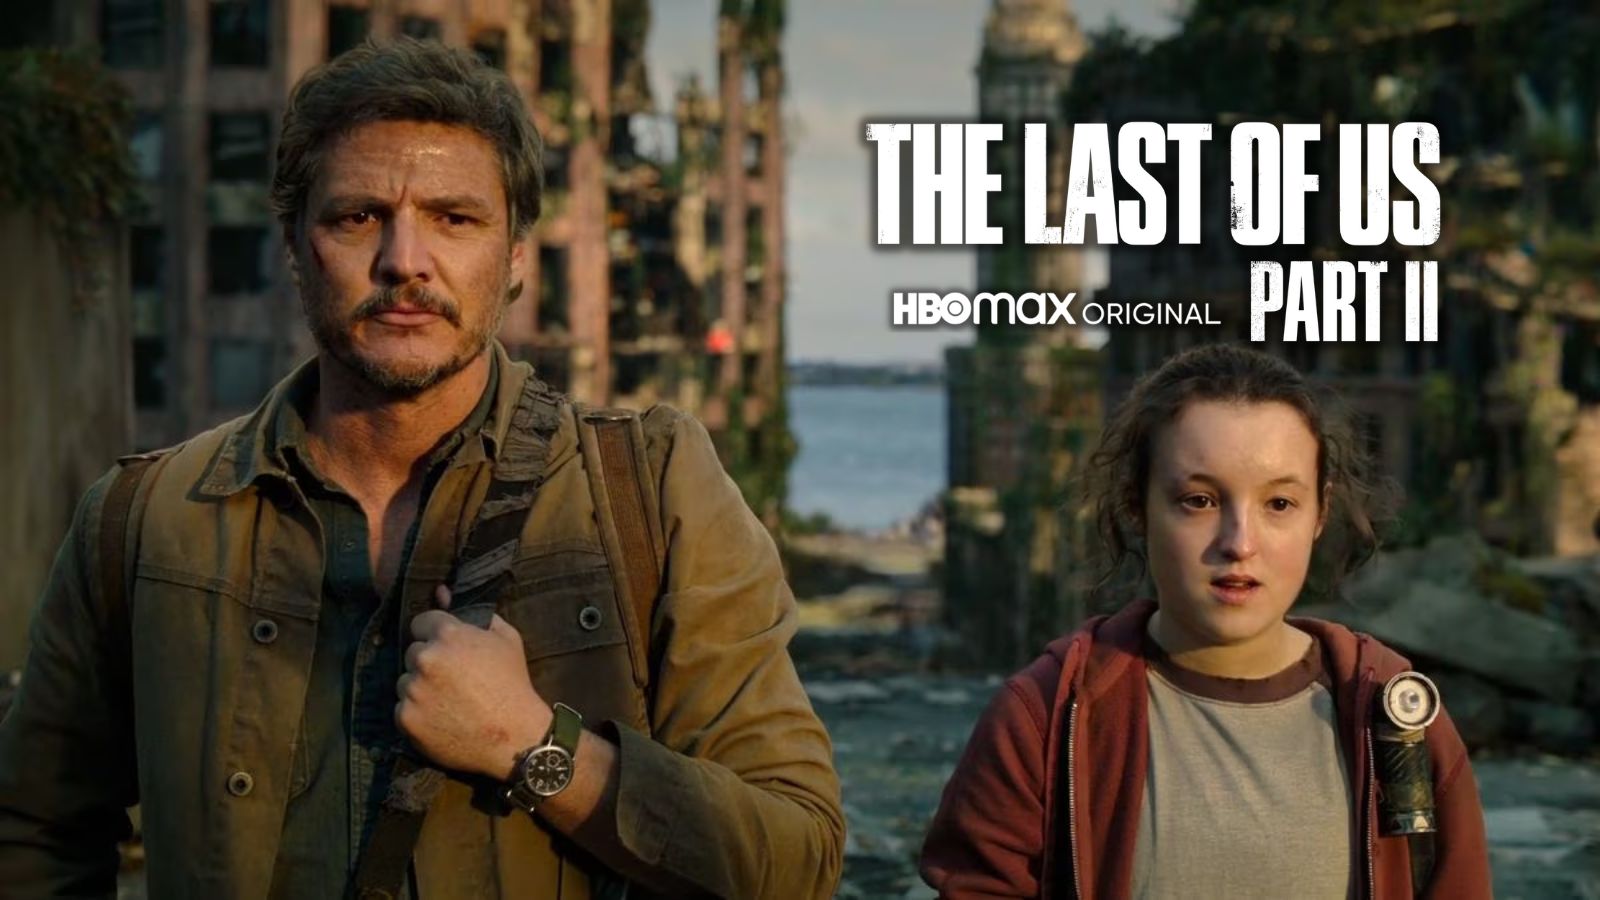 The Last of Us tendrá más de dos temporadas en HBO y Max